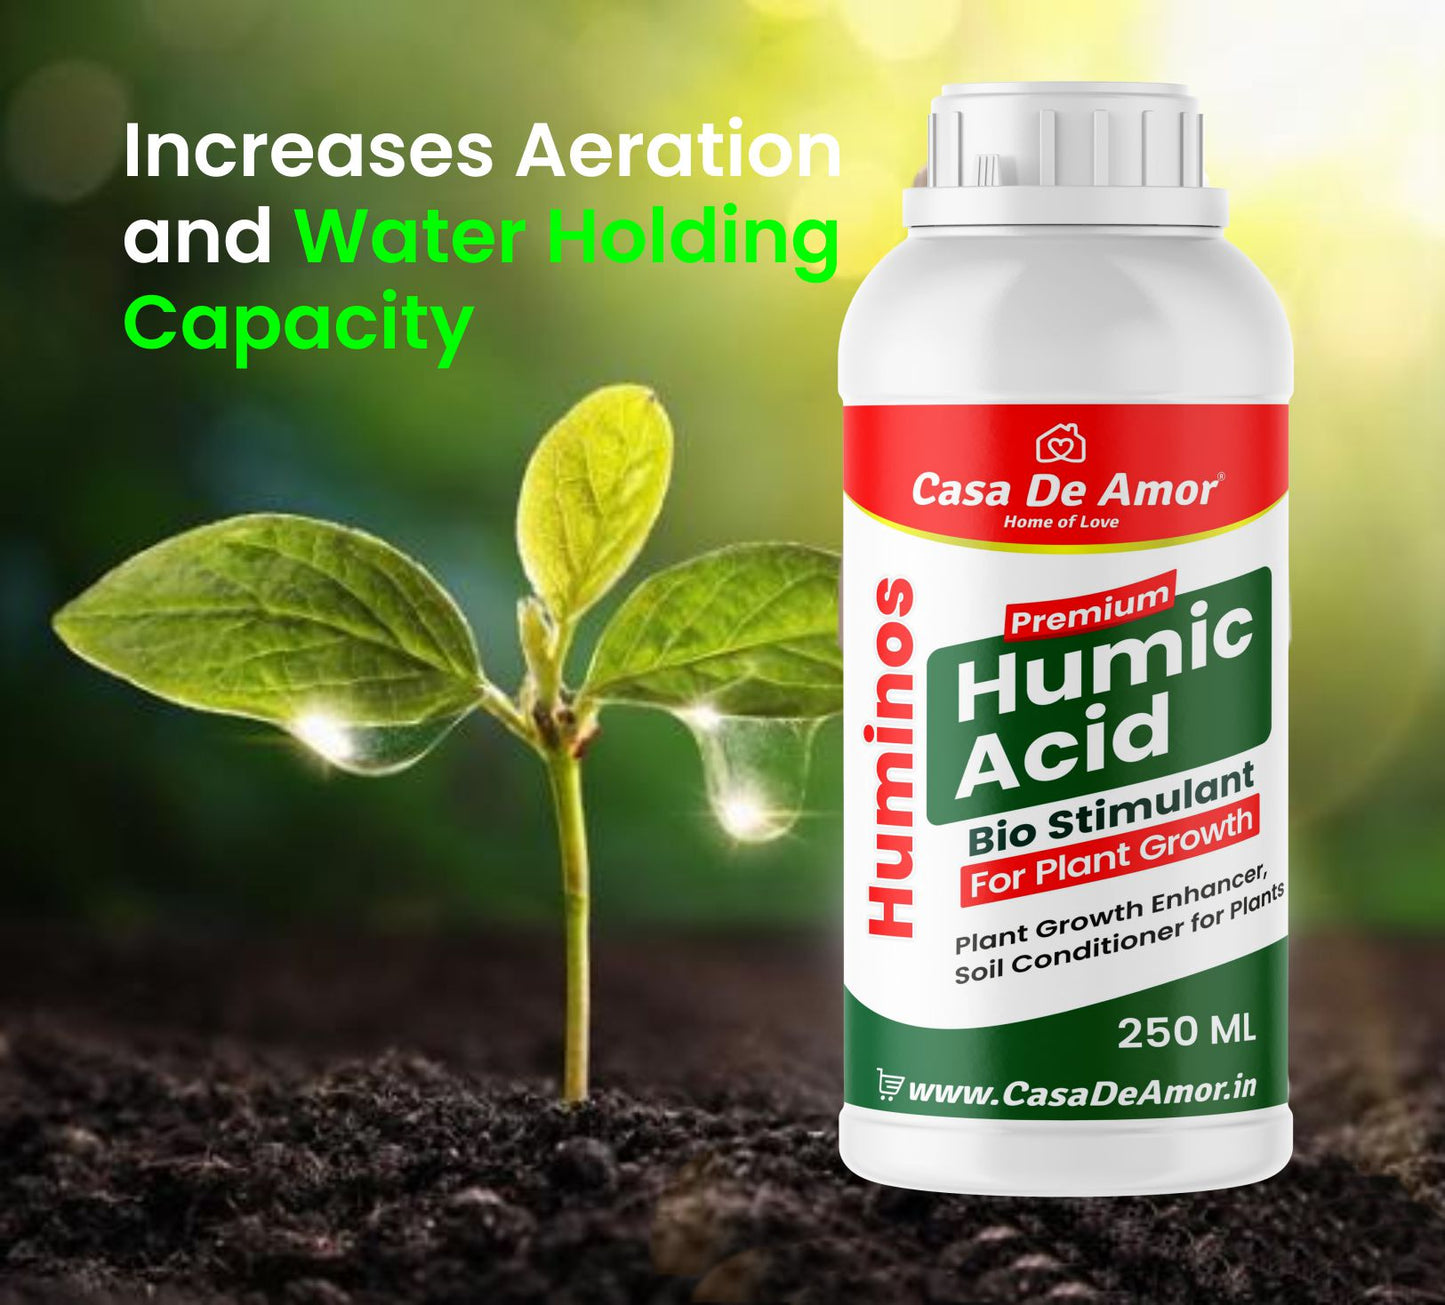 Casa De Amor Liquid Humic Acid Bio-Fertilizer for Plants and Root Growth Promoter